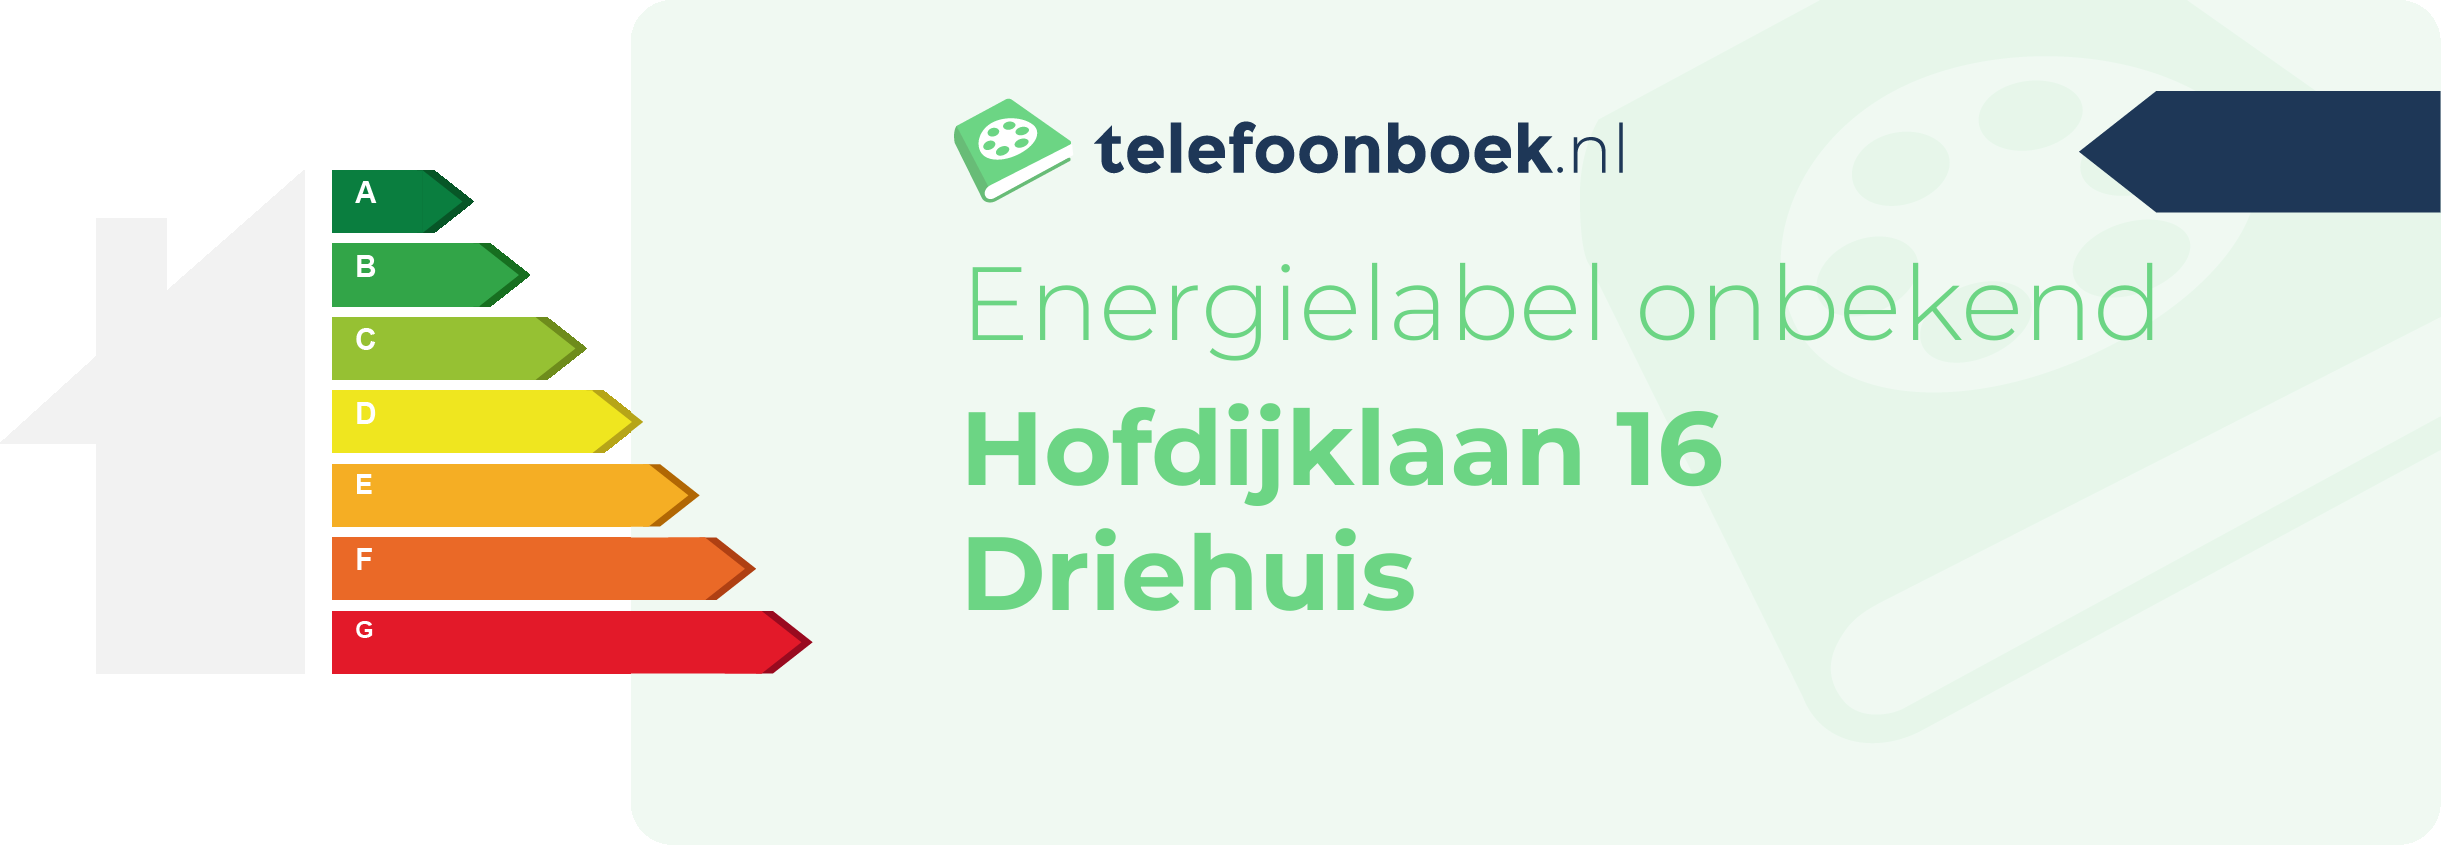 Energielabel Hofdijklaan 16 Driehuis